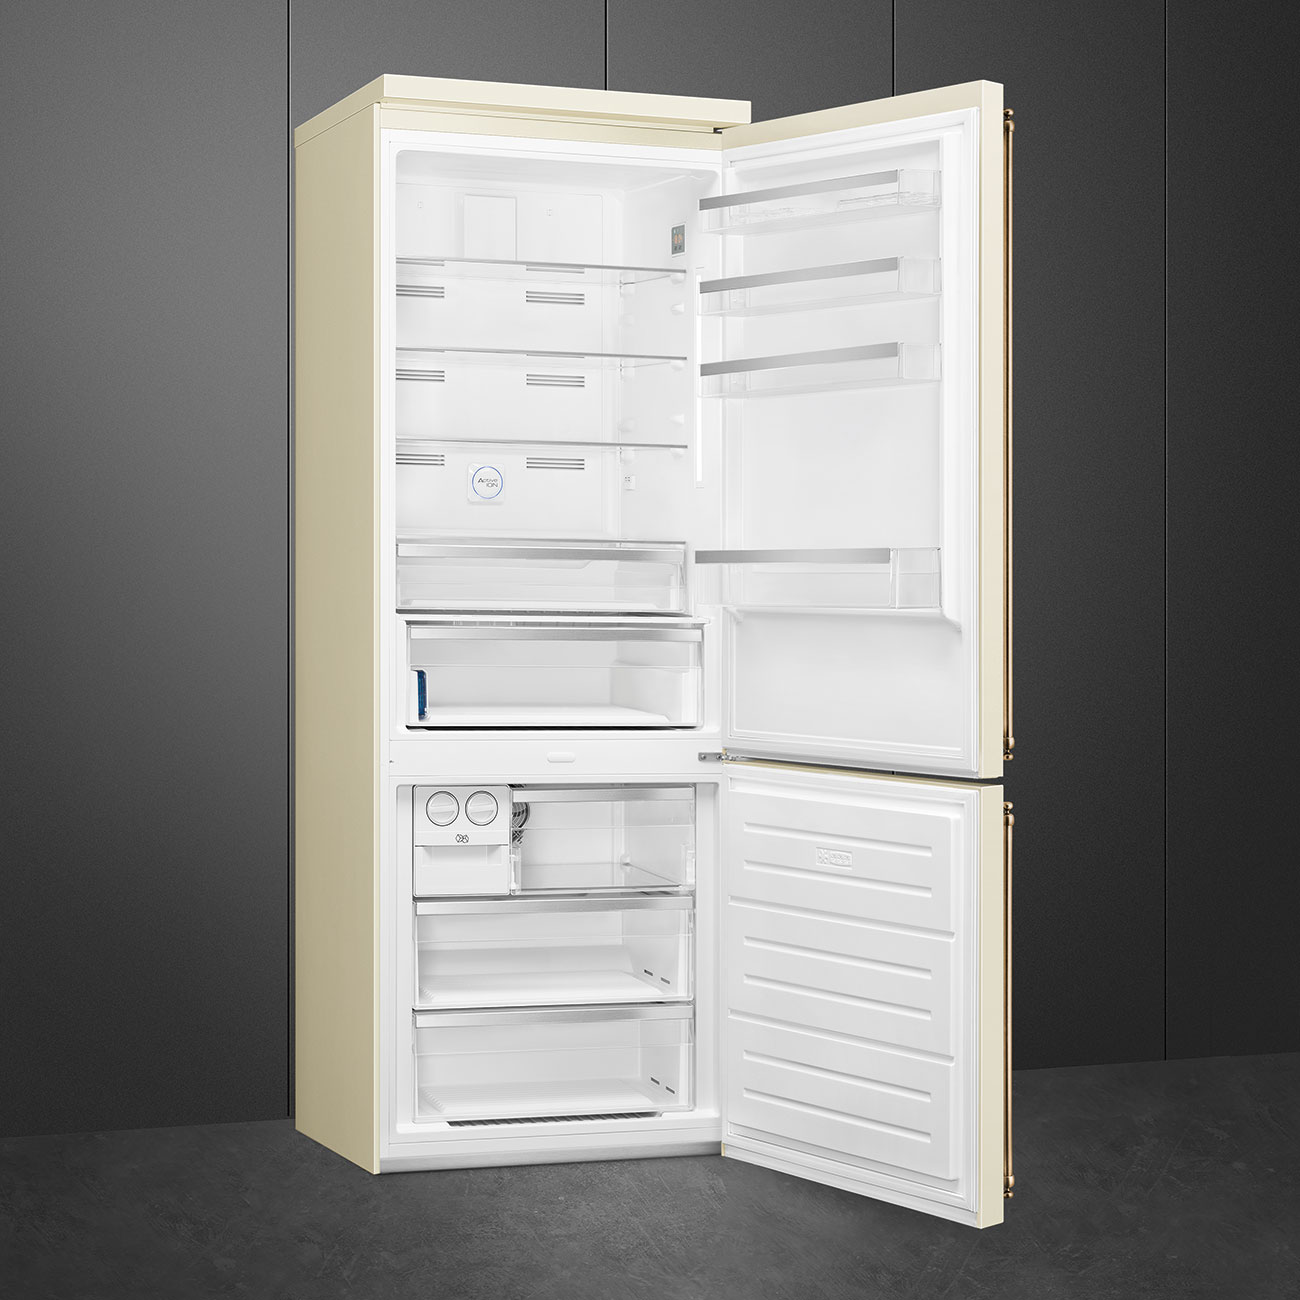 Холодильник Smeg FA8005RPO5 отзывы - изображения 5